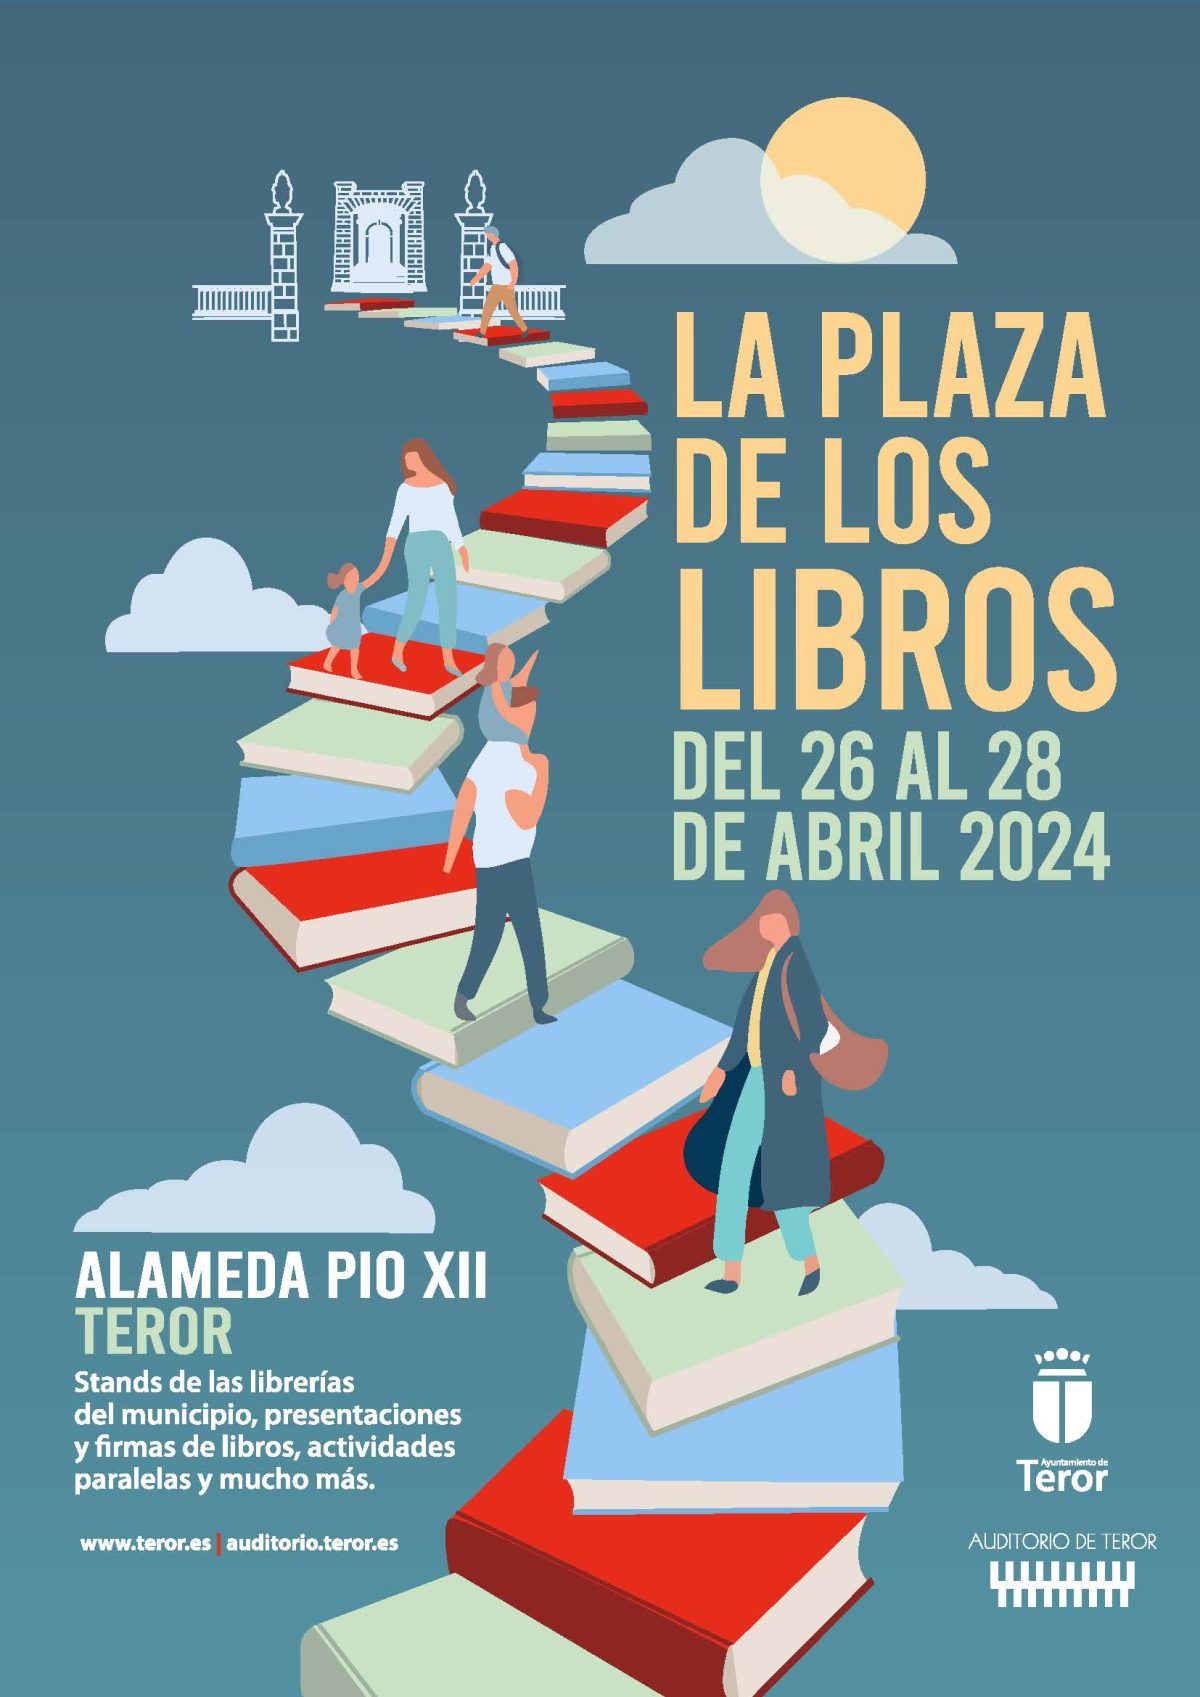 Teror abre su ‘Plaza de los Libros’ del 26 al 28 de abril para celebrar el Día del Libro